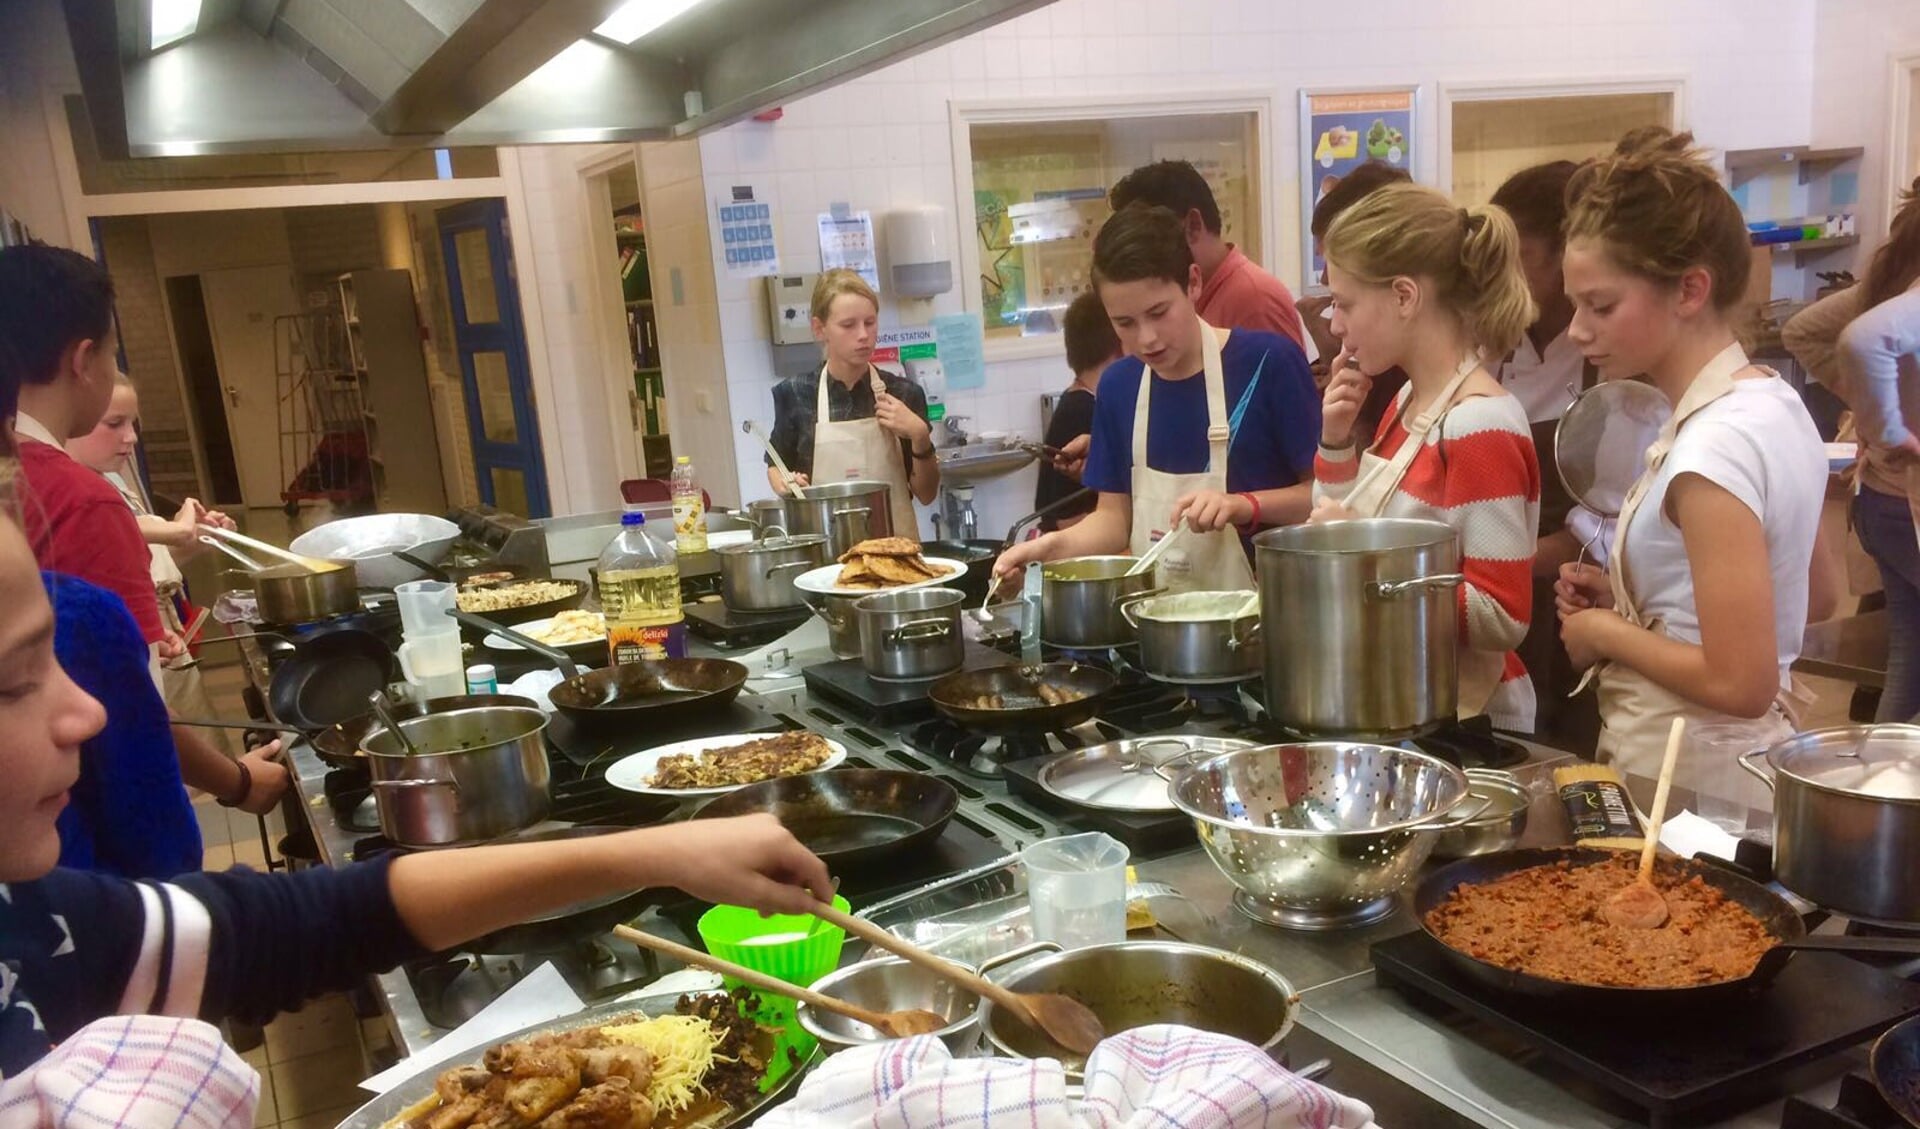 Totaal 22 leerlingen met twaalf verschillende achtergronden kookten samen gerechten. Foto: PR